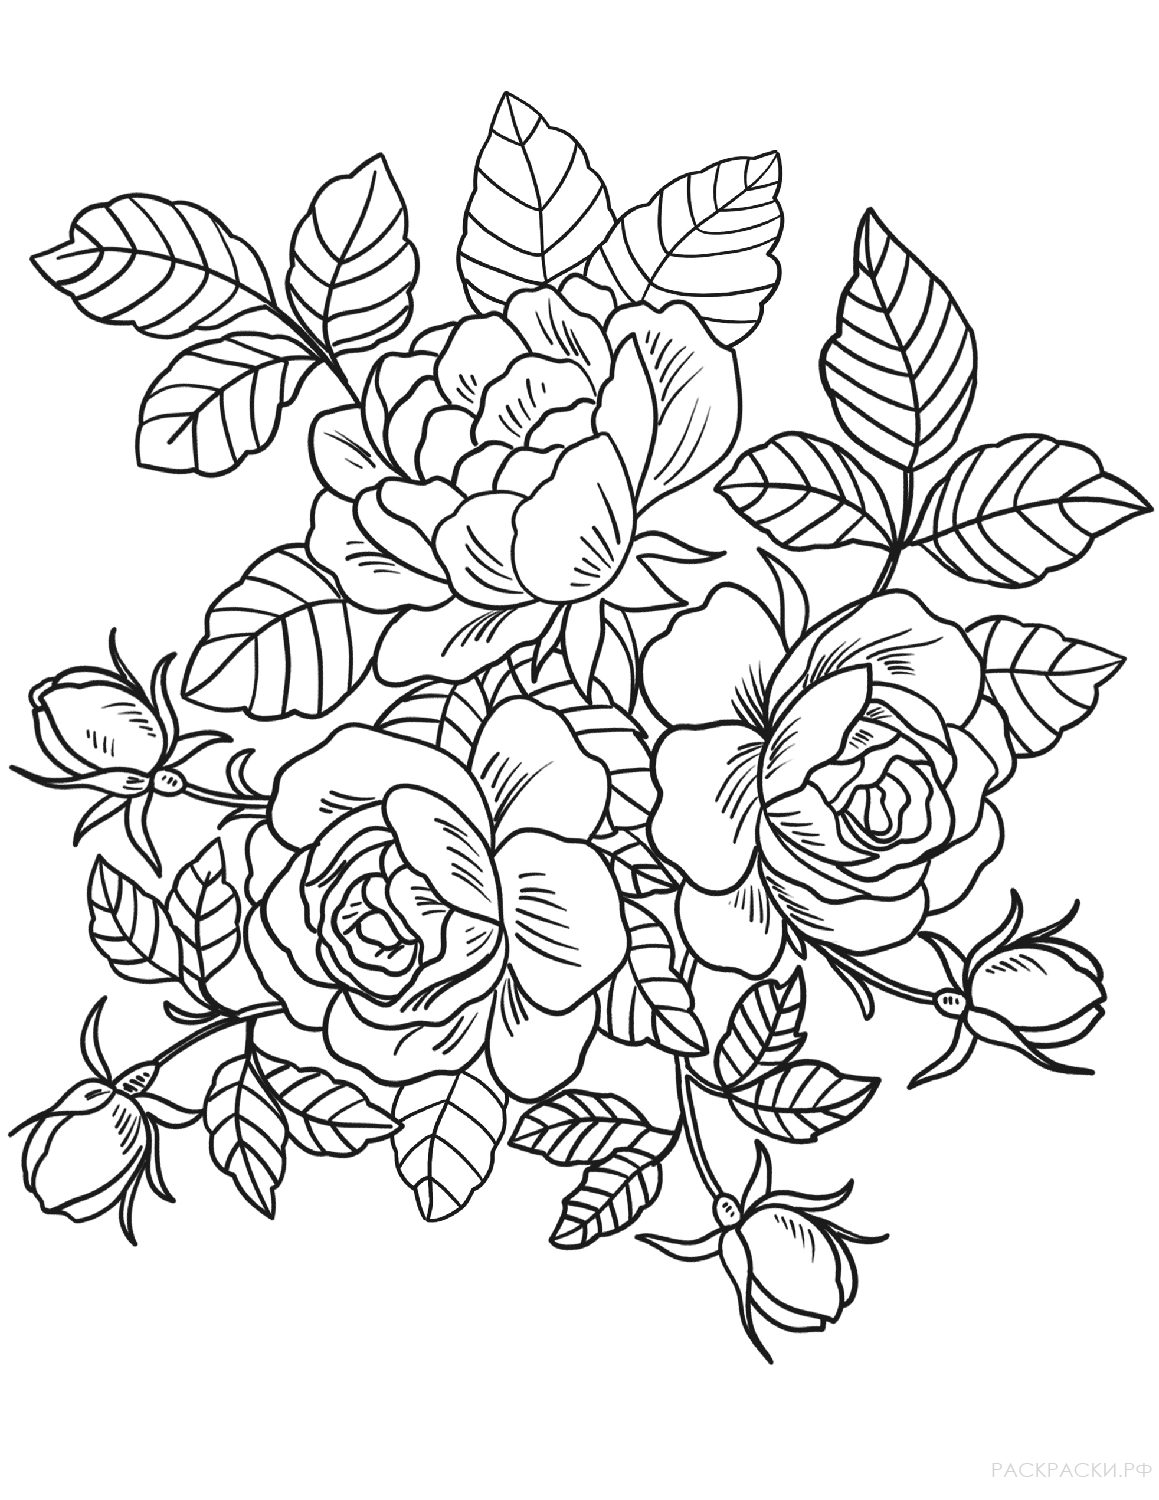 Раскраска Три розы в листьях